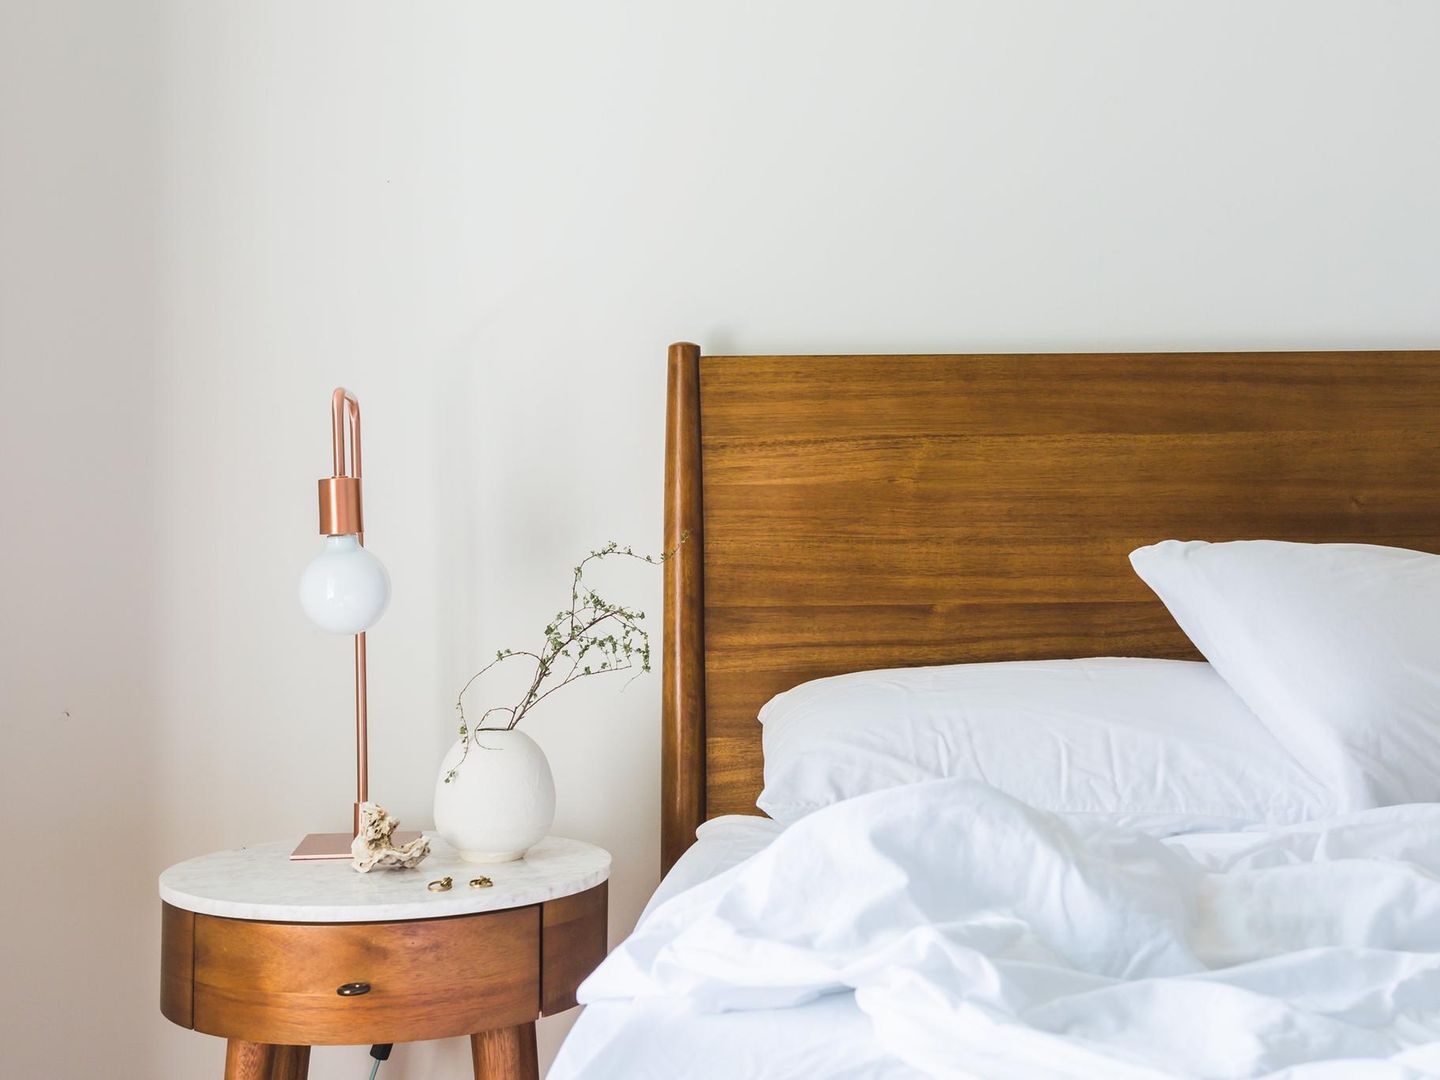 Schlafzimmer einrichten 20 schöne Ideen   STERN.de